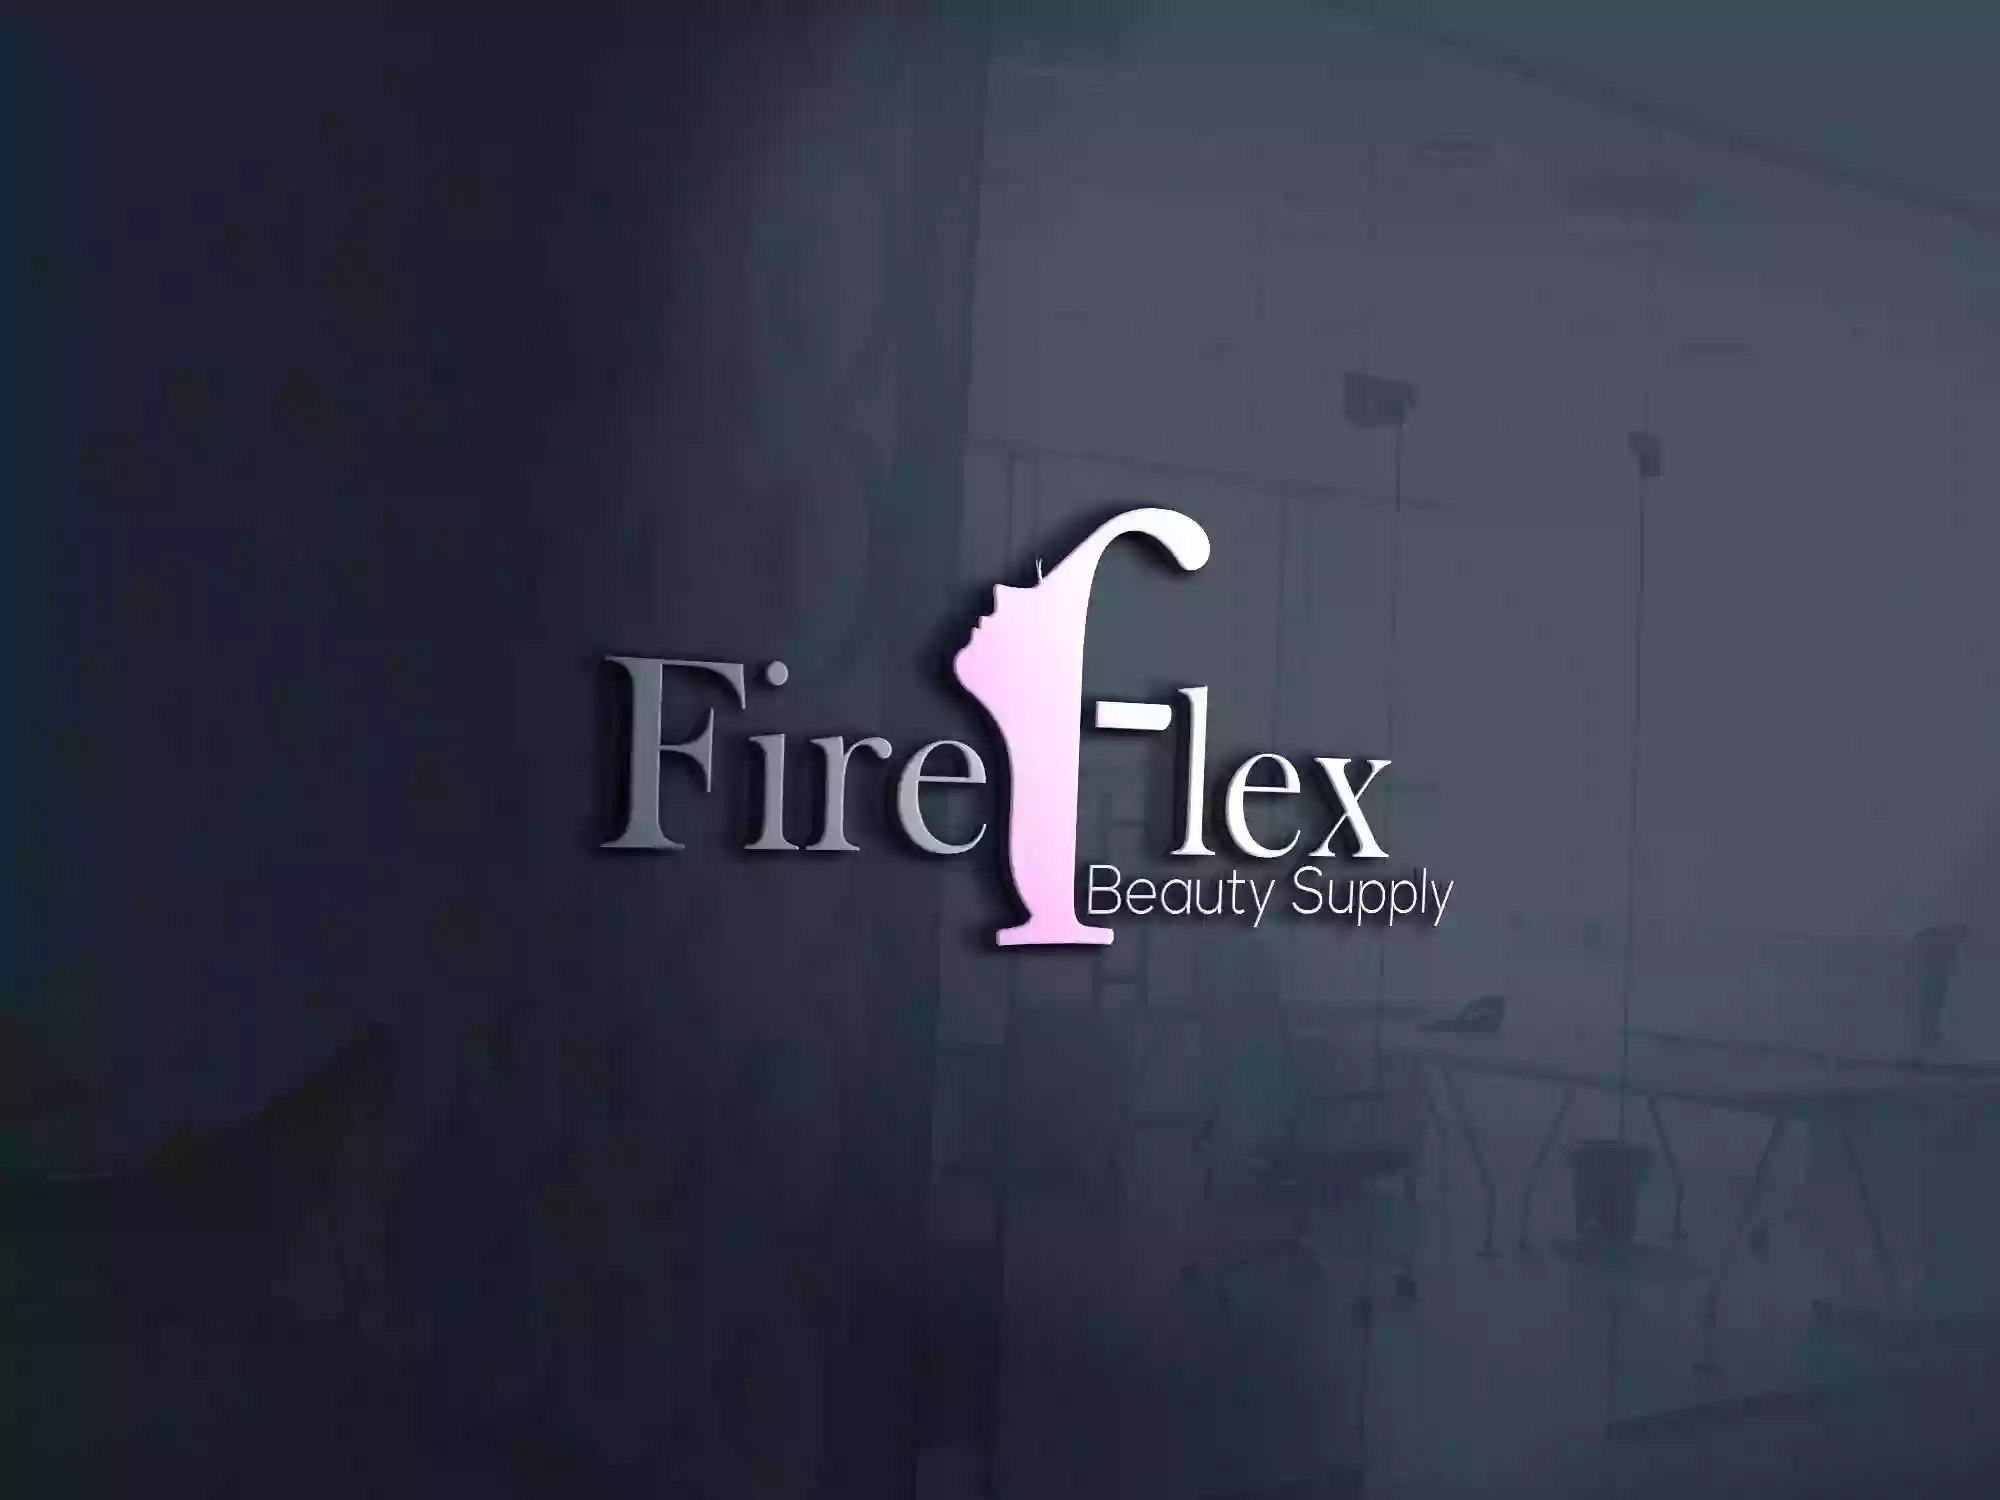 Fire Flex Beauty Supply